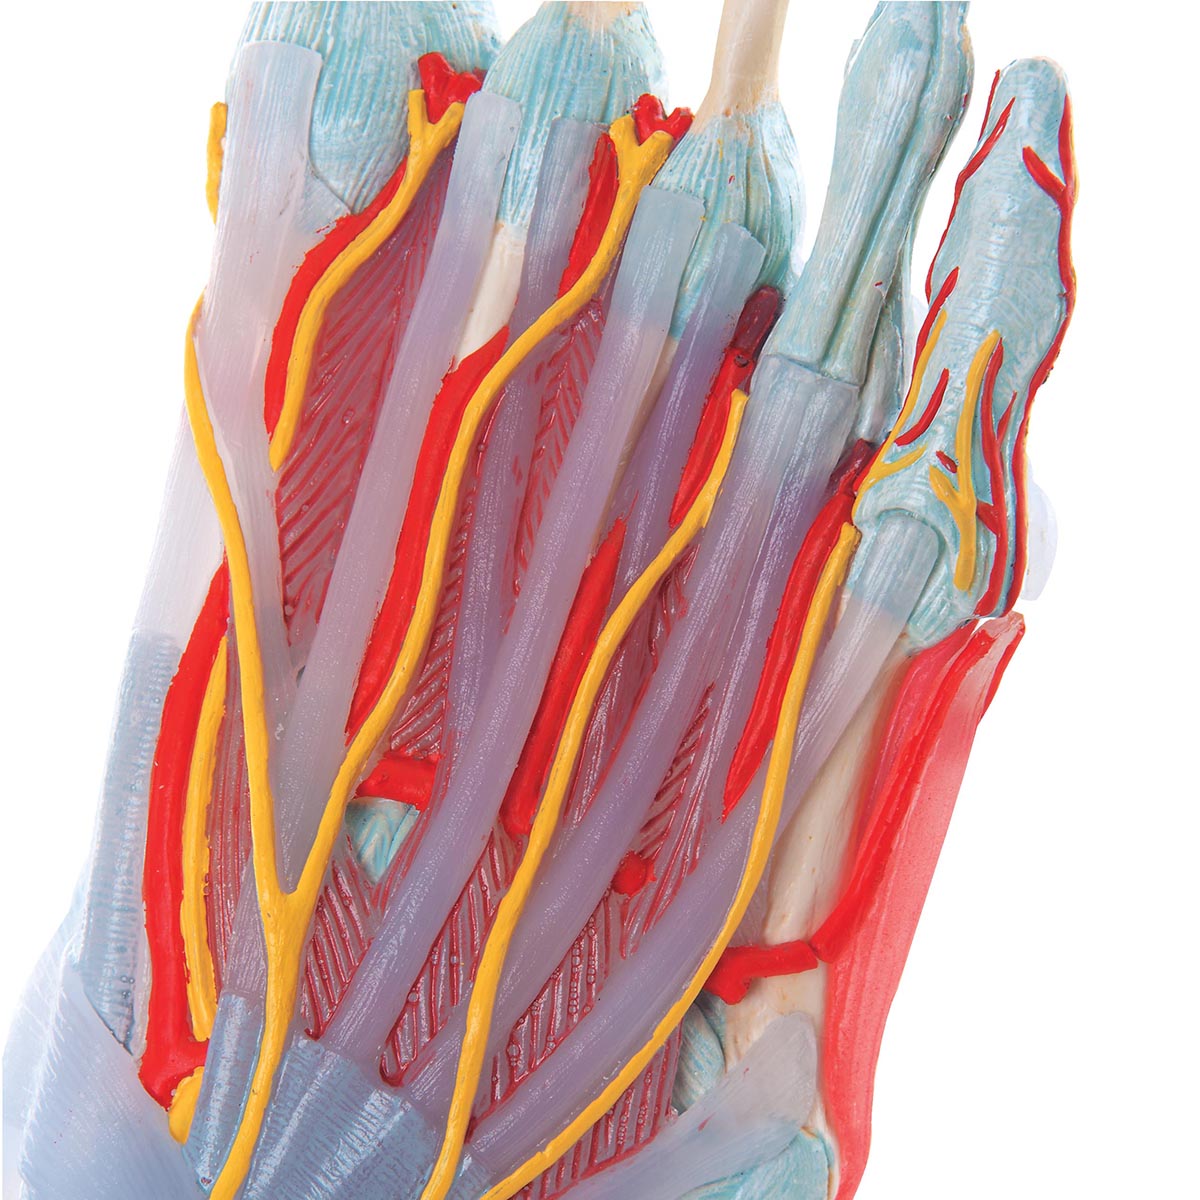 Komplett fotmodell med ligament, muskler, kärl och nerver - kan separeras i 6 delar